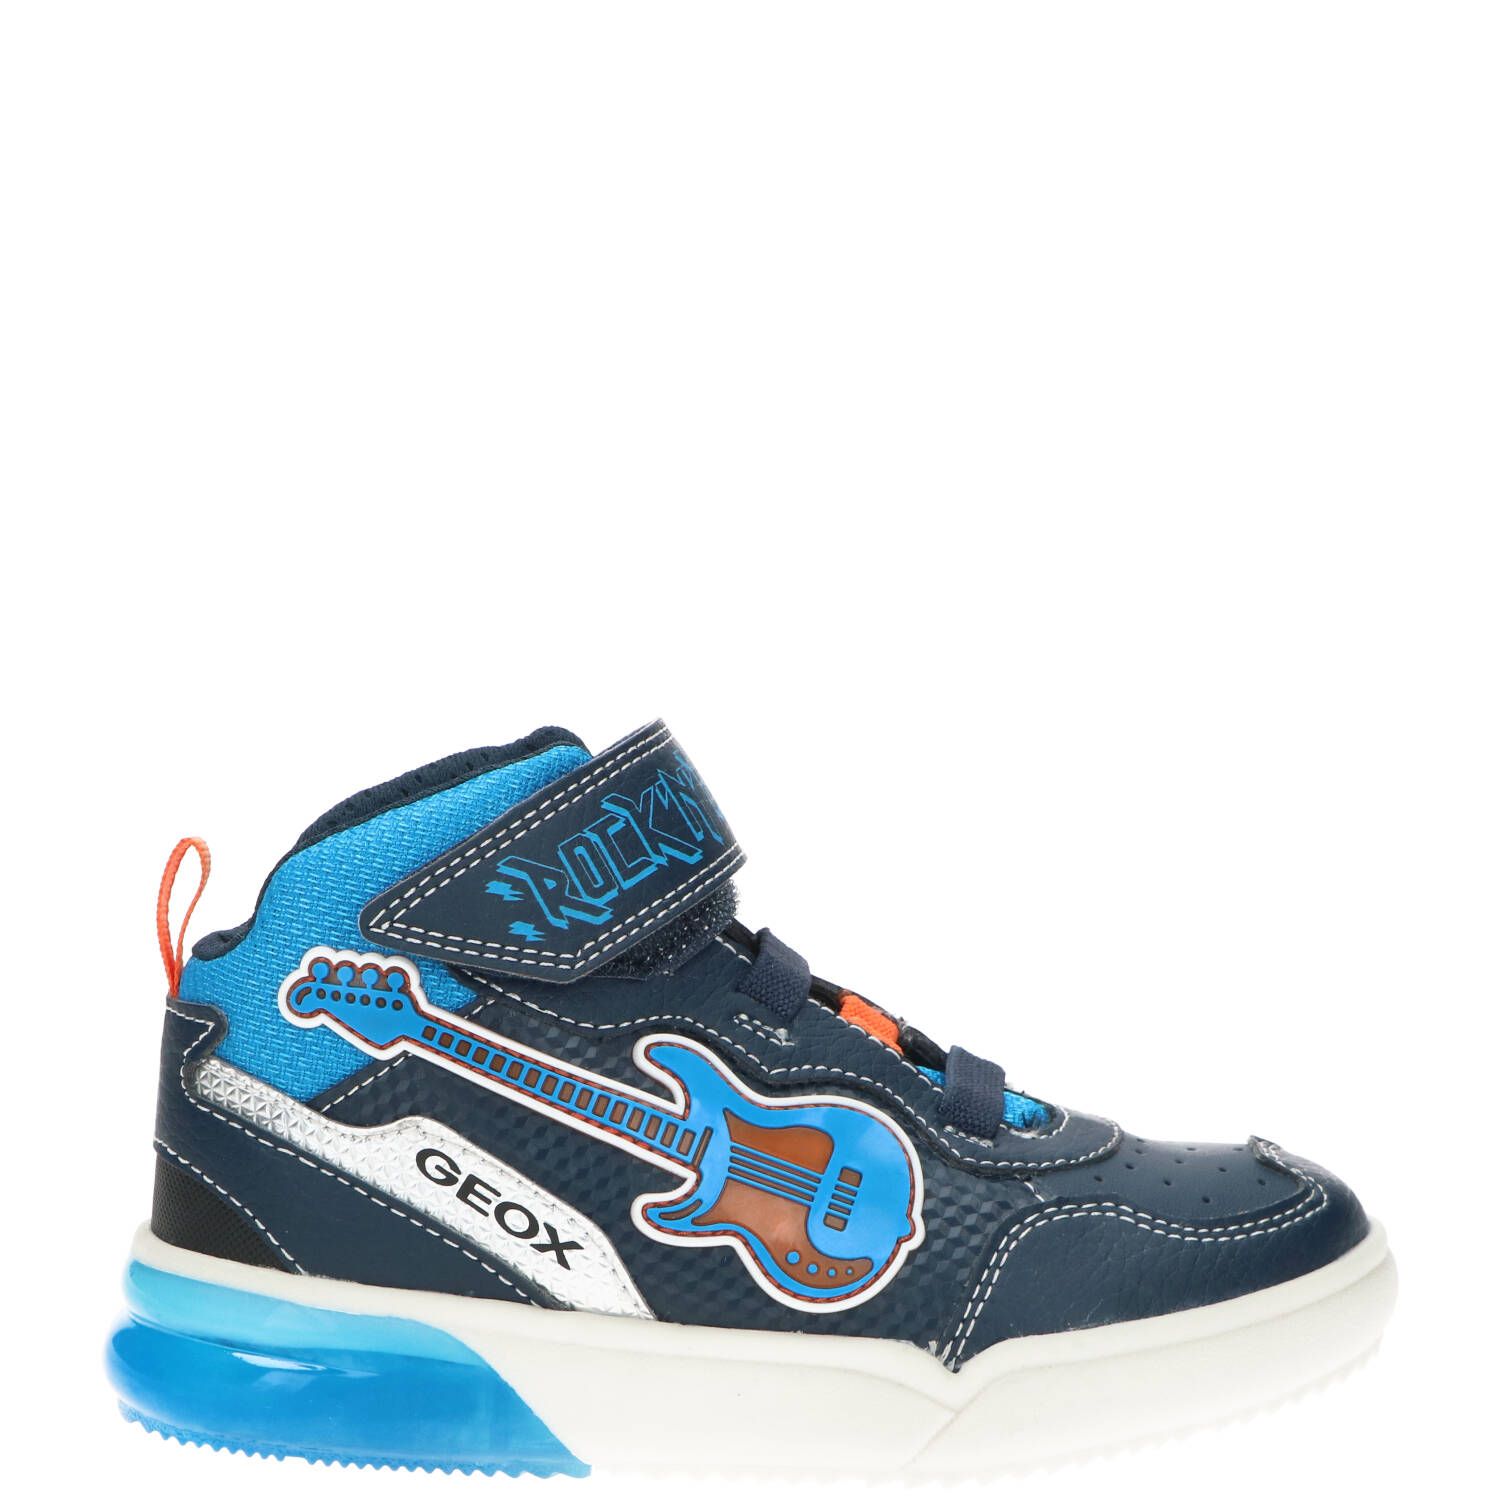 Geox Jongensboot, Lage schoenen, Jongen, Maat 29, blauw